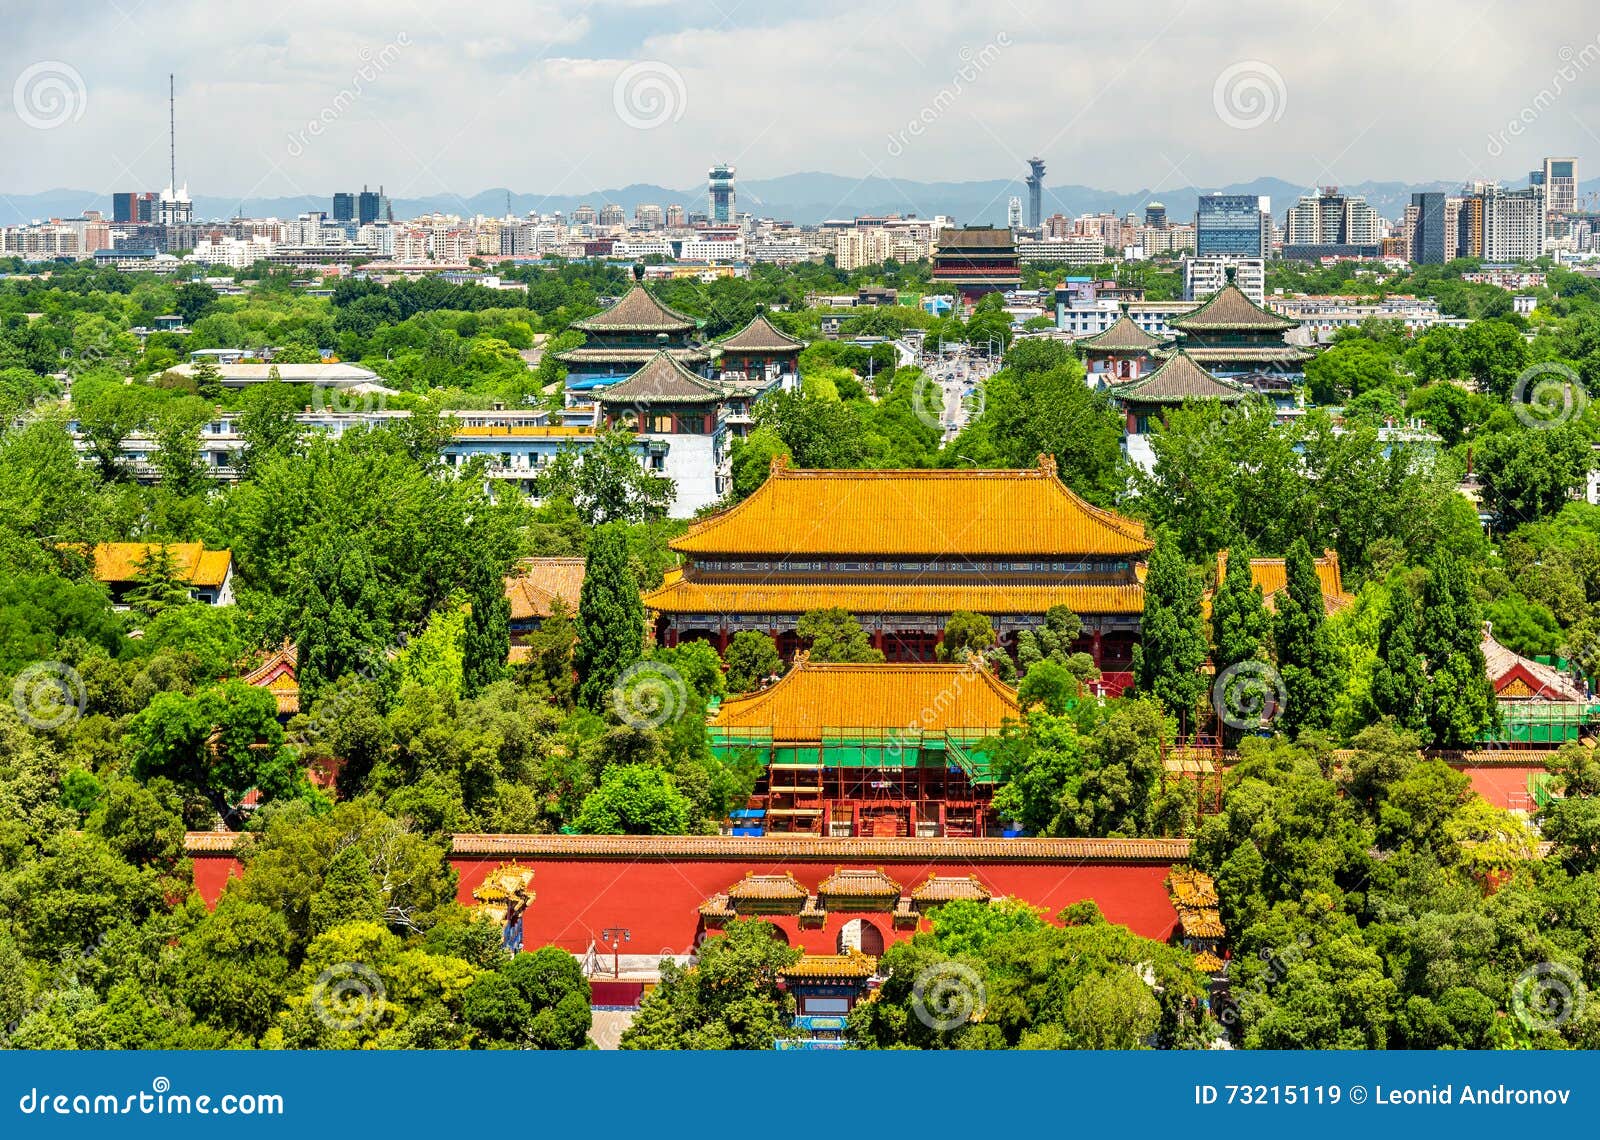 view of shouhuang palace in jingshan park - beijing